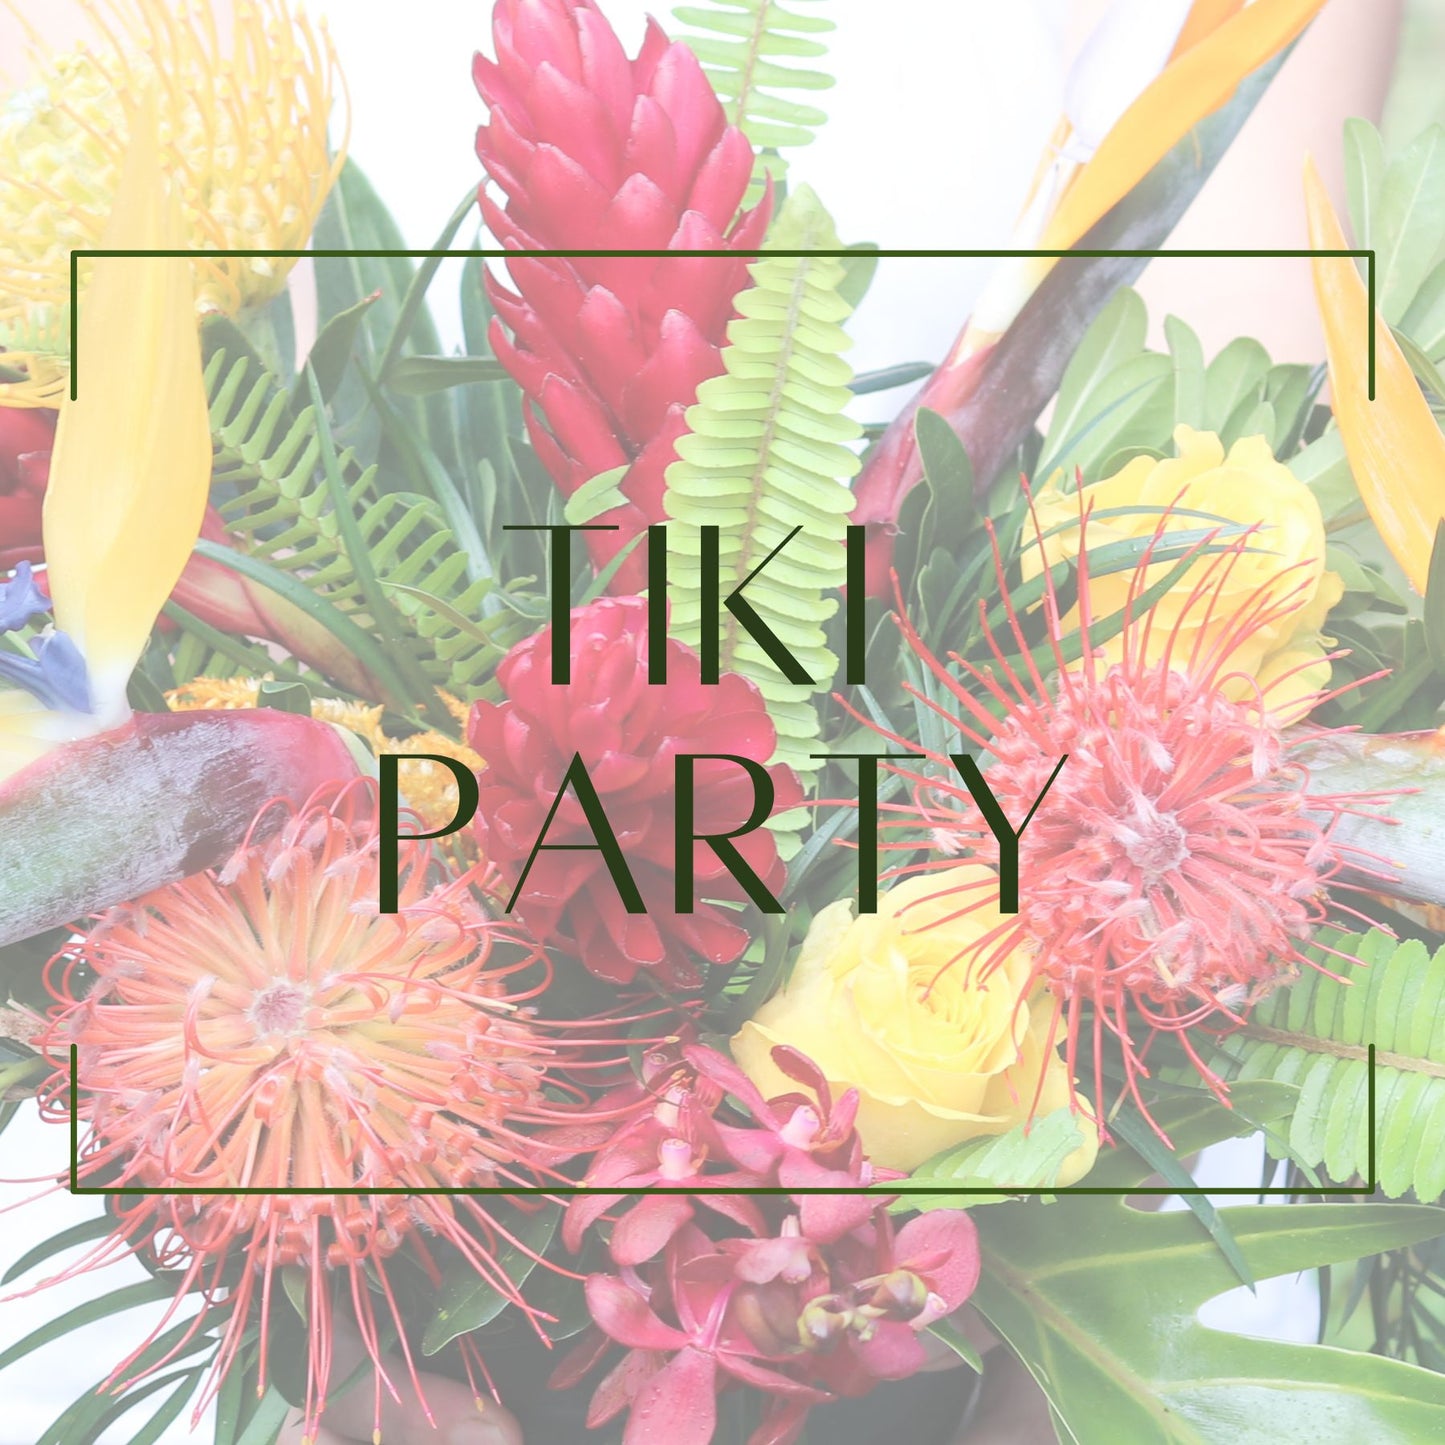 Tiki Party - Cocktail Arrangement